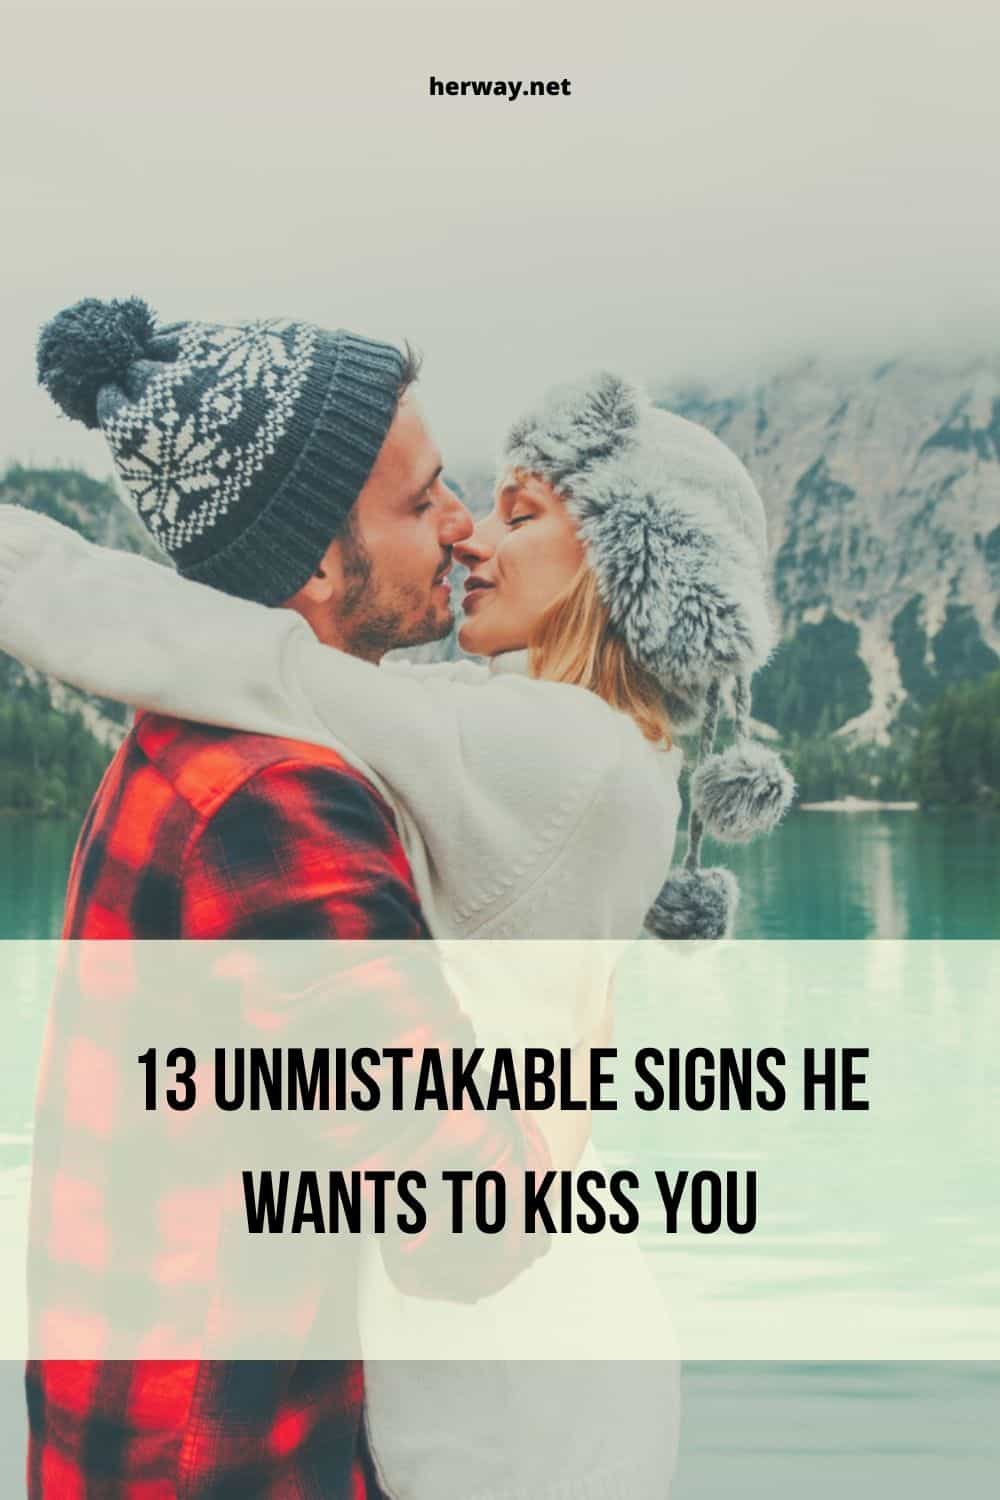 13 segni inequivocabili che vuole baciarti